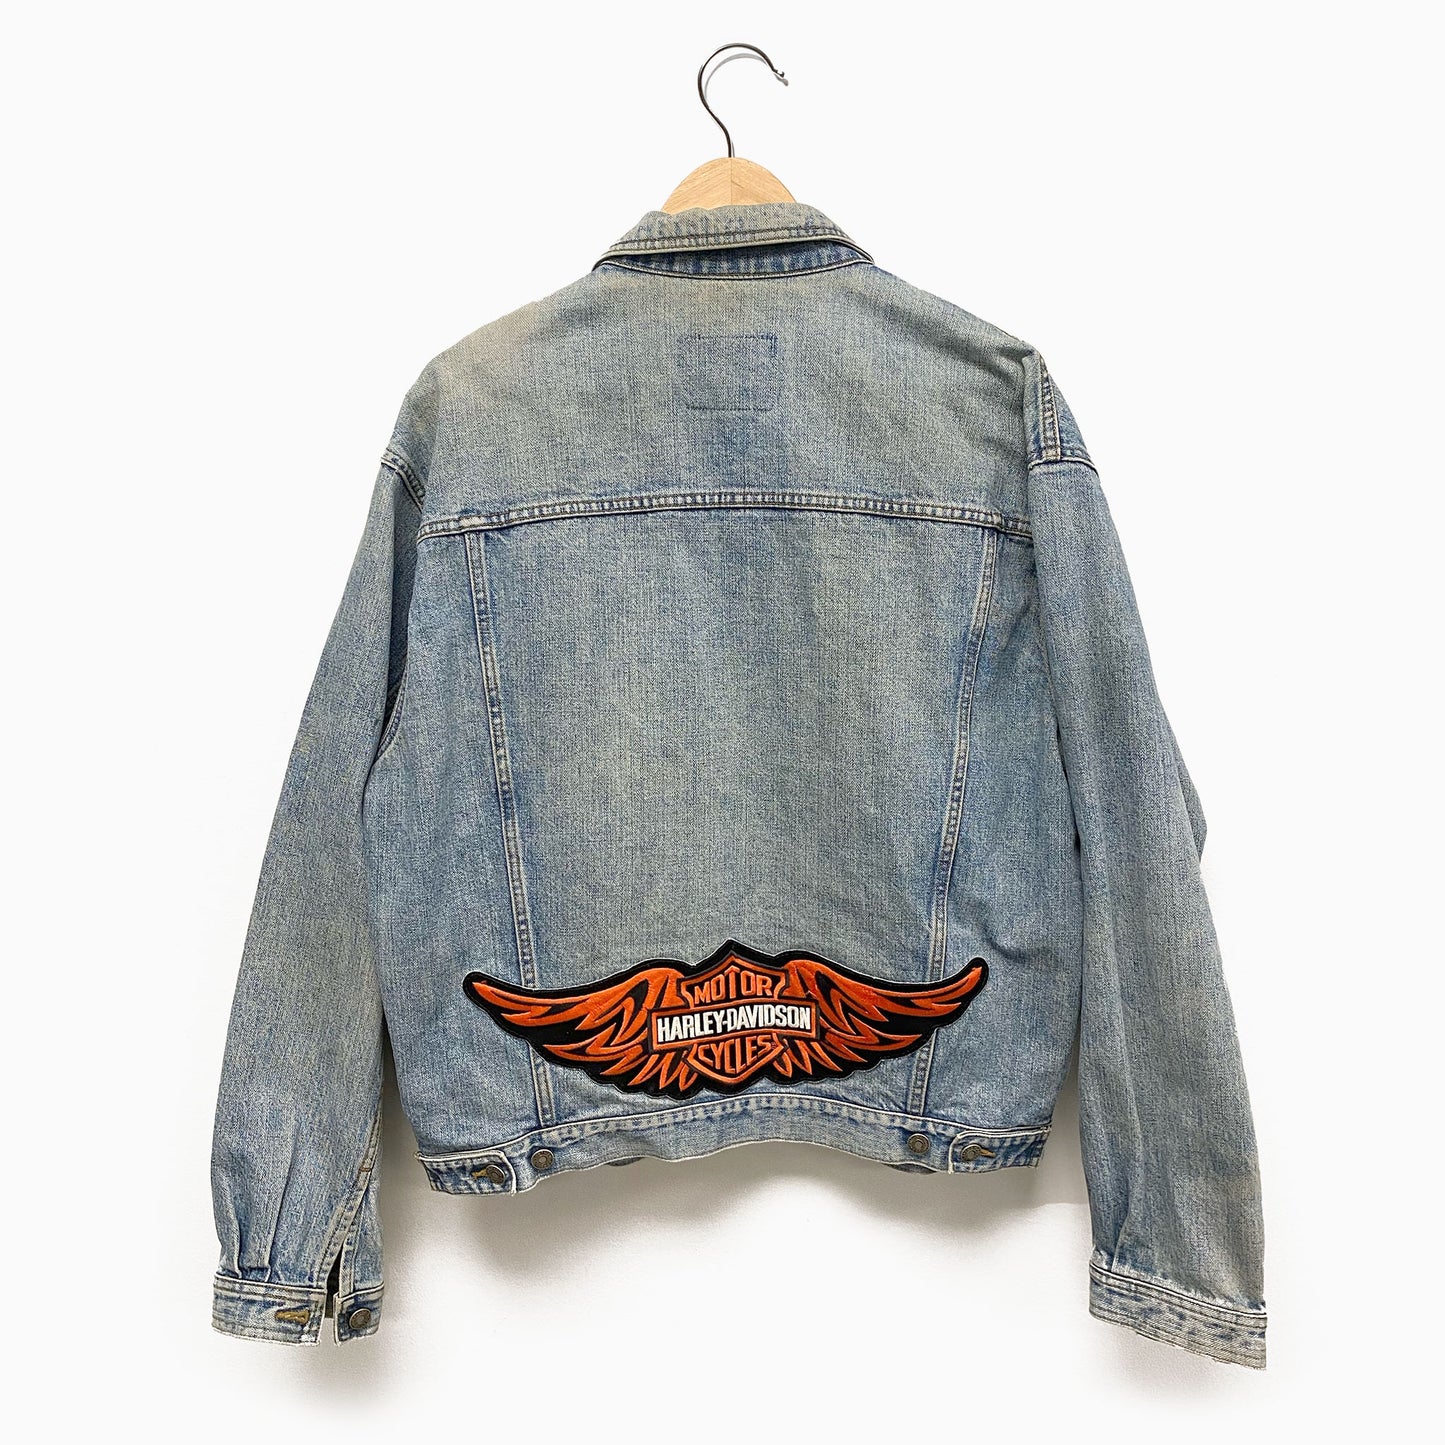 Vintage Demin Levi's/Harley Davidson Jacket